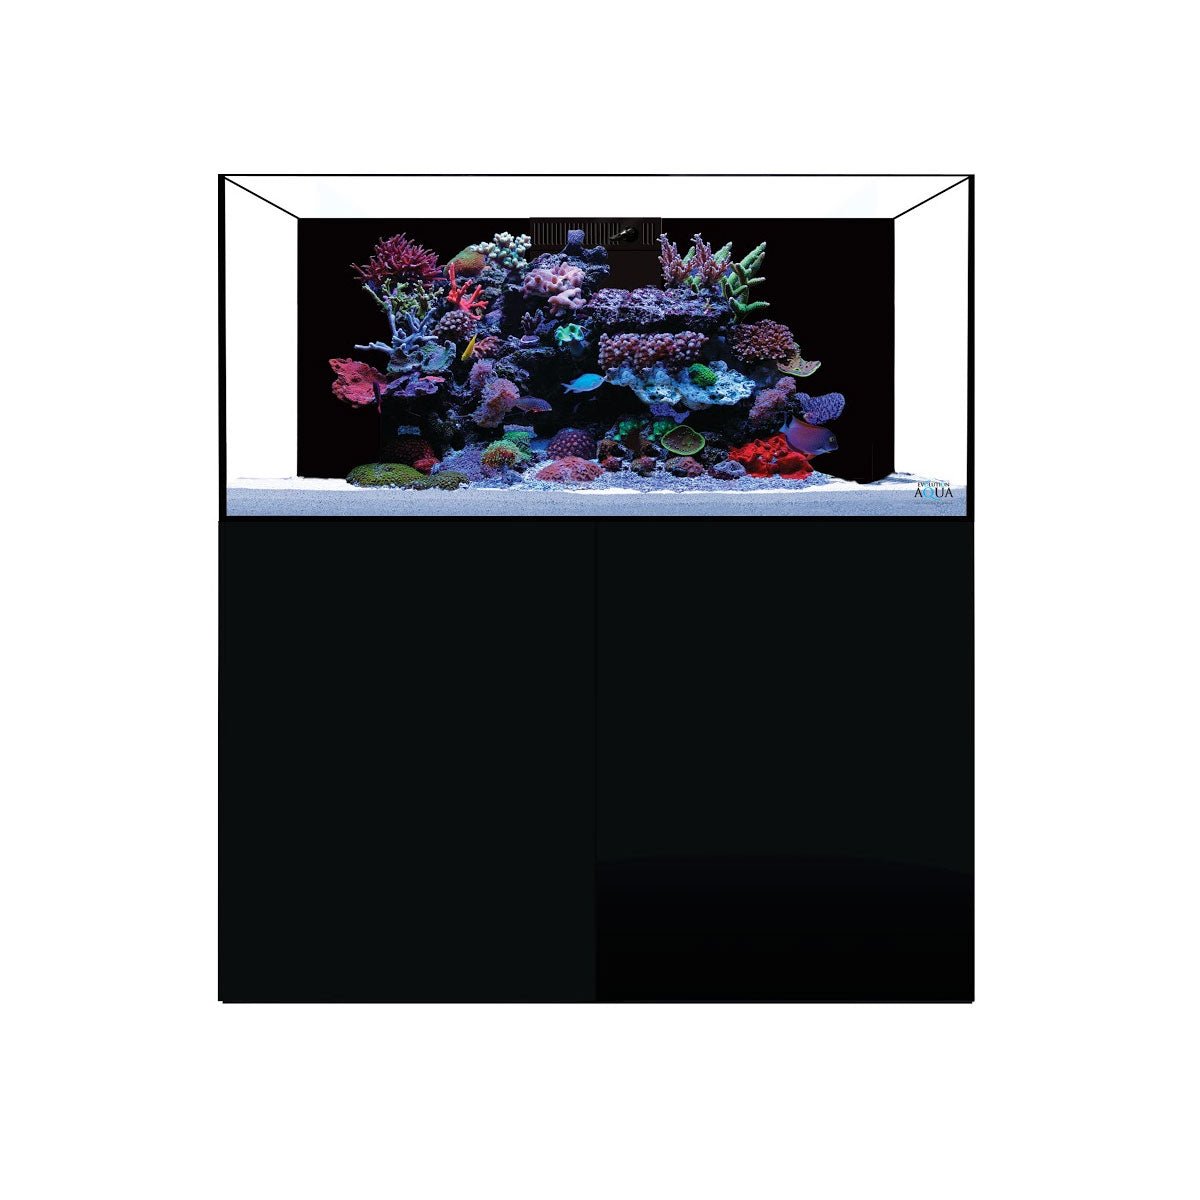 D-D Aqua-Pro Reef 1200 - Gloss Black - Wooden Cabinet - Charterhouse Aquatics